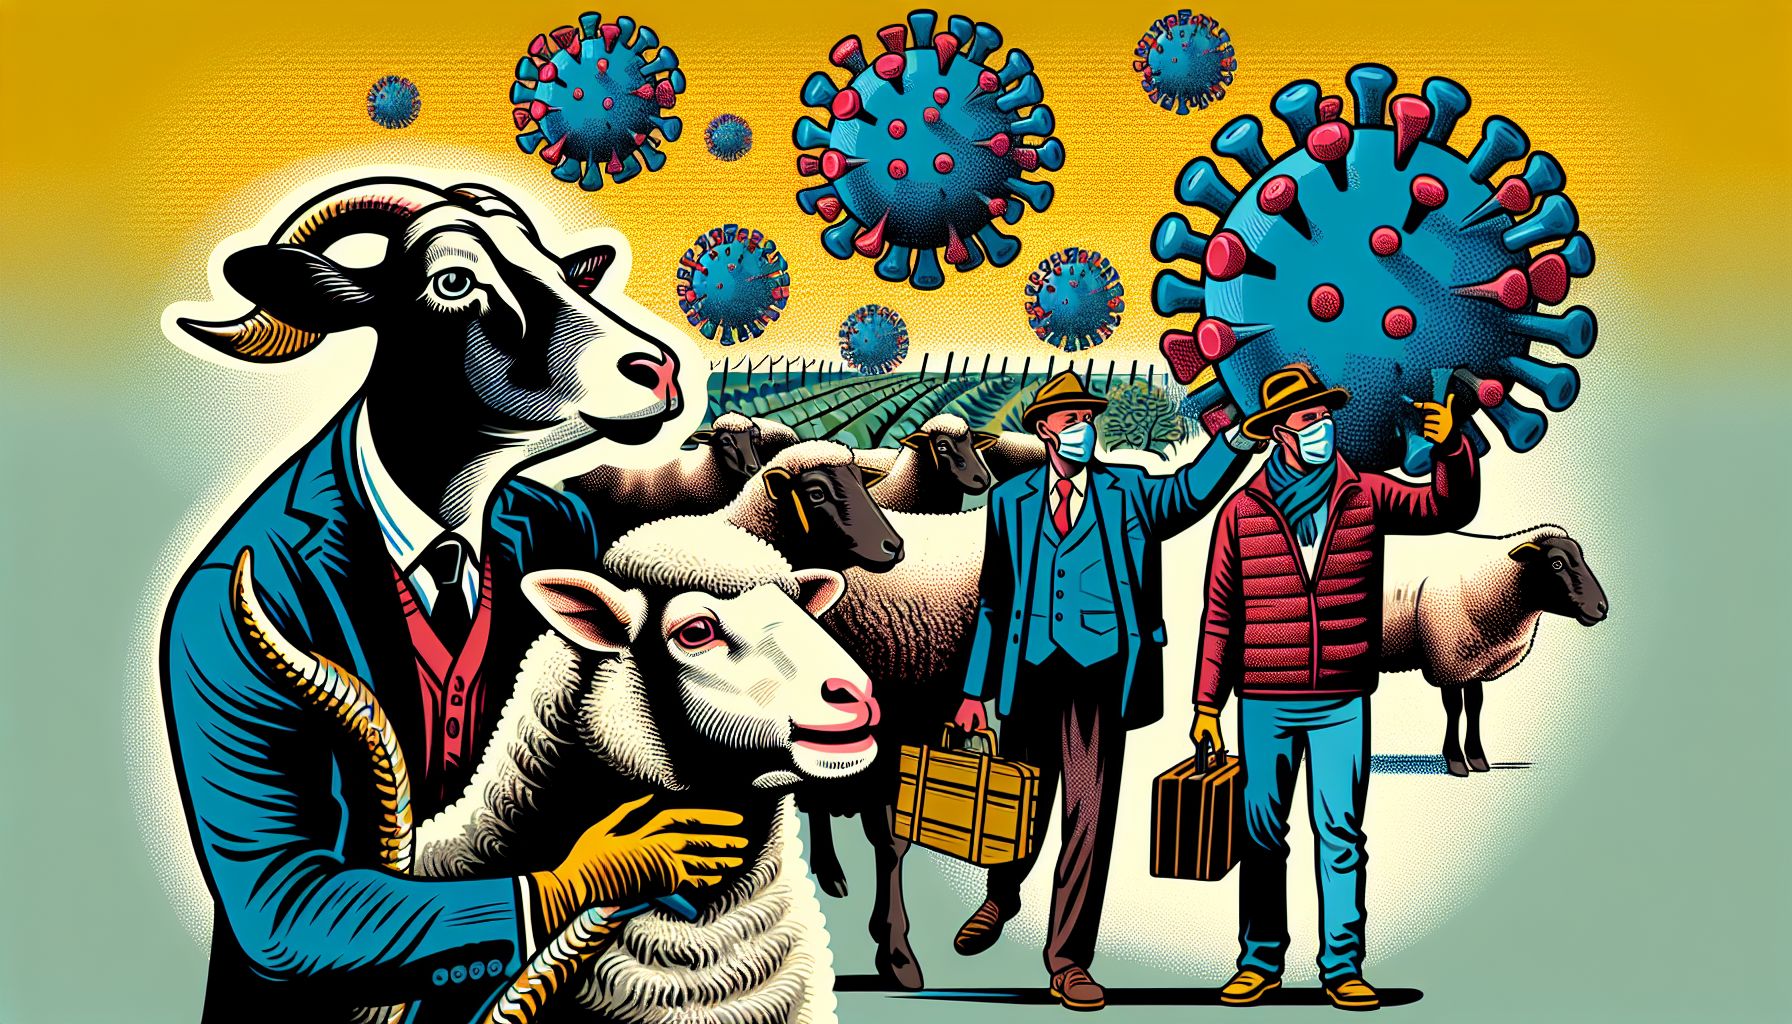 blauwtongvirus terug in nederland: veehouders in de knel